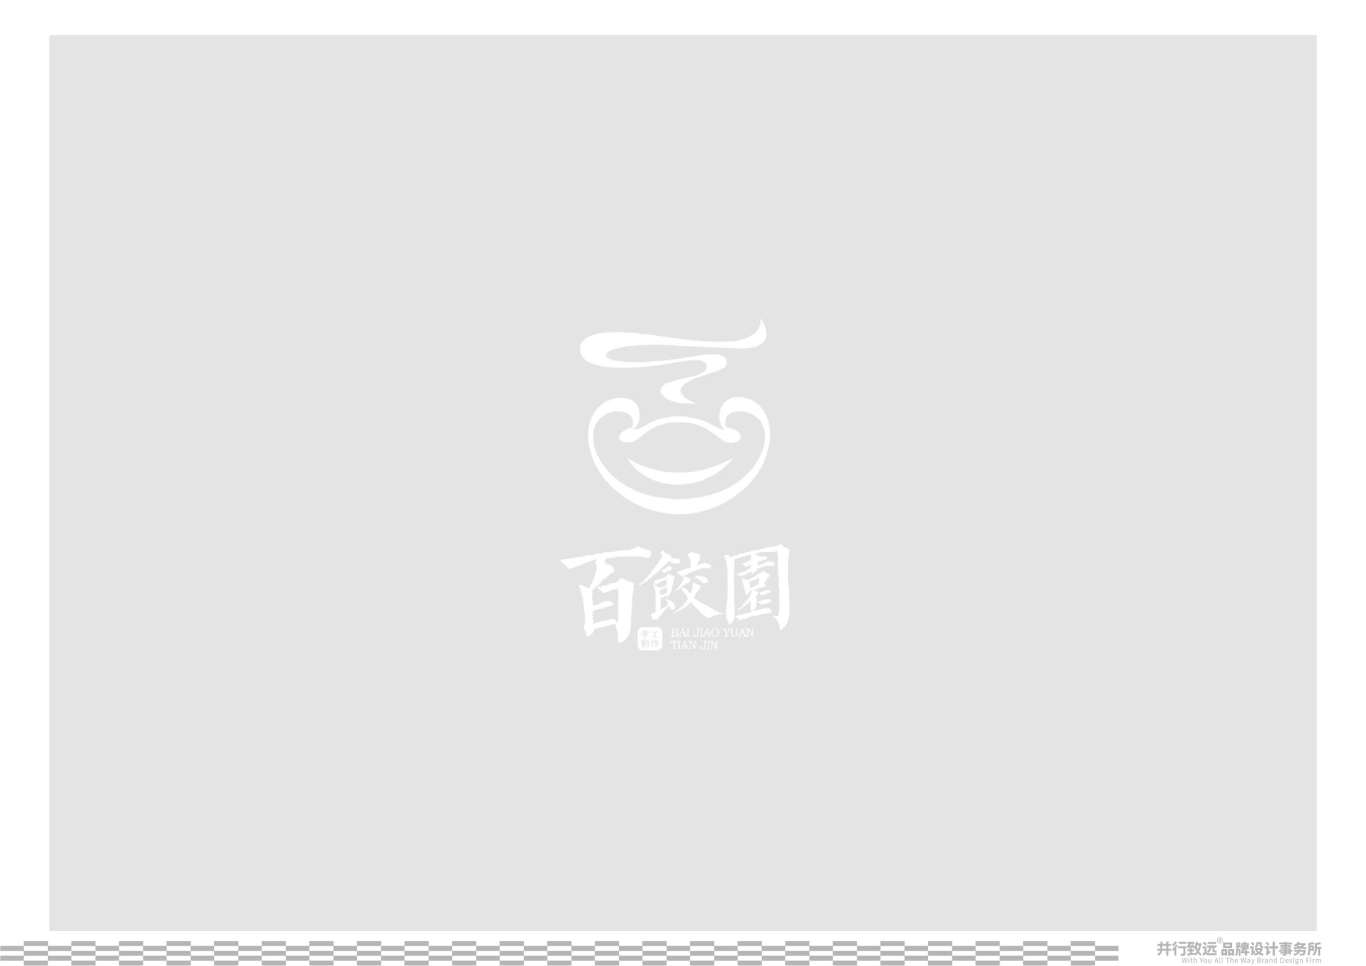 天津百饺园logo升级设计图29